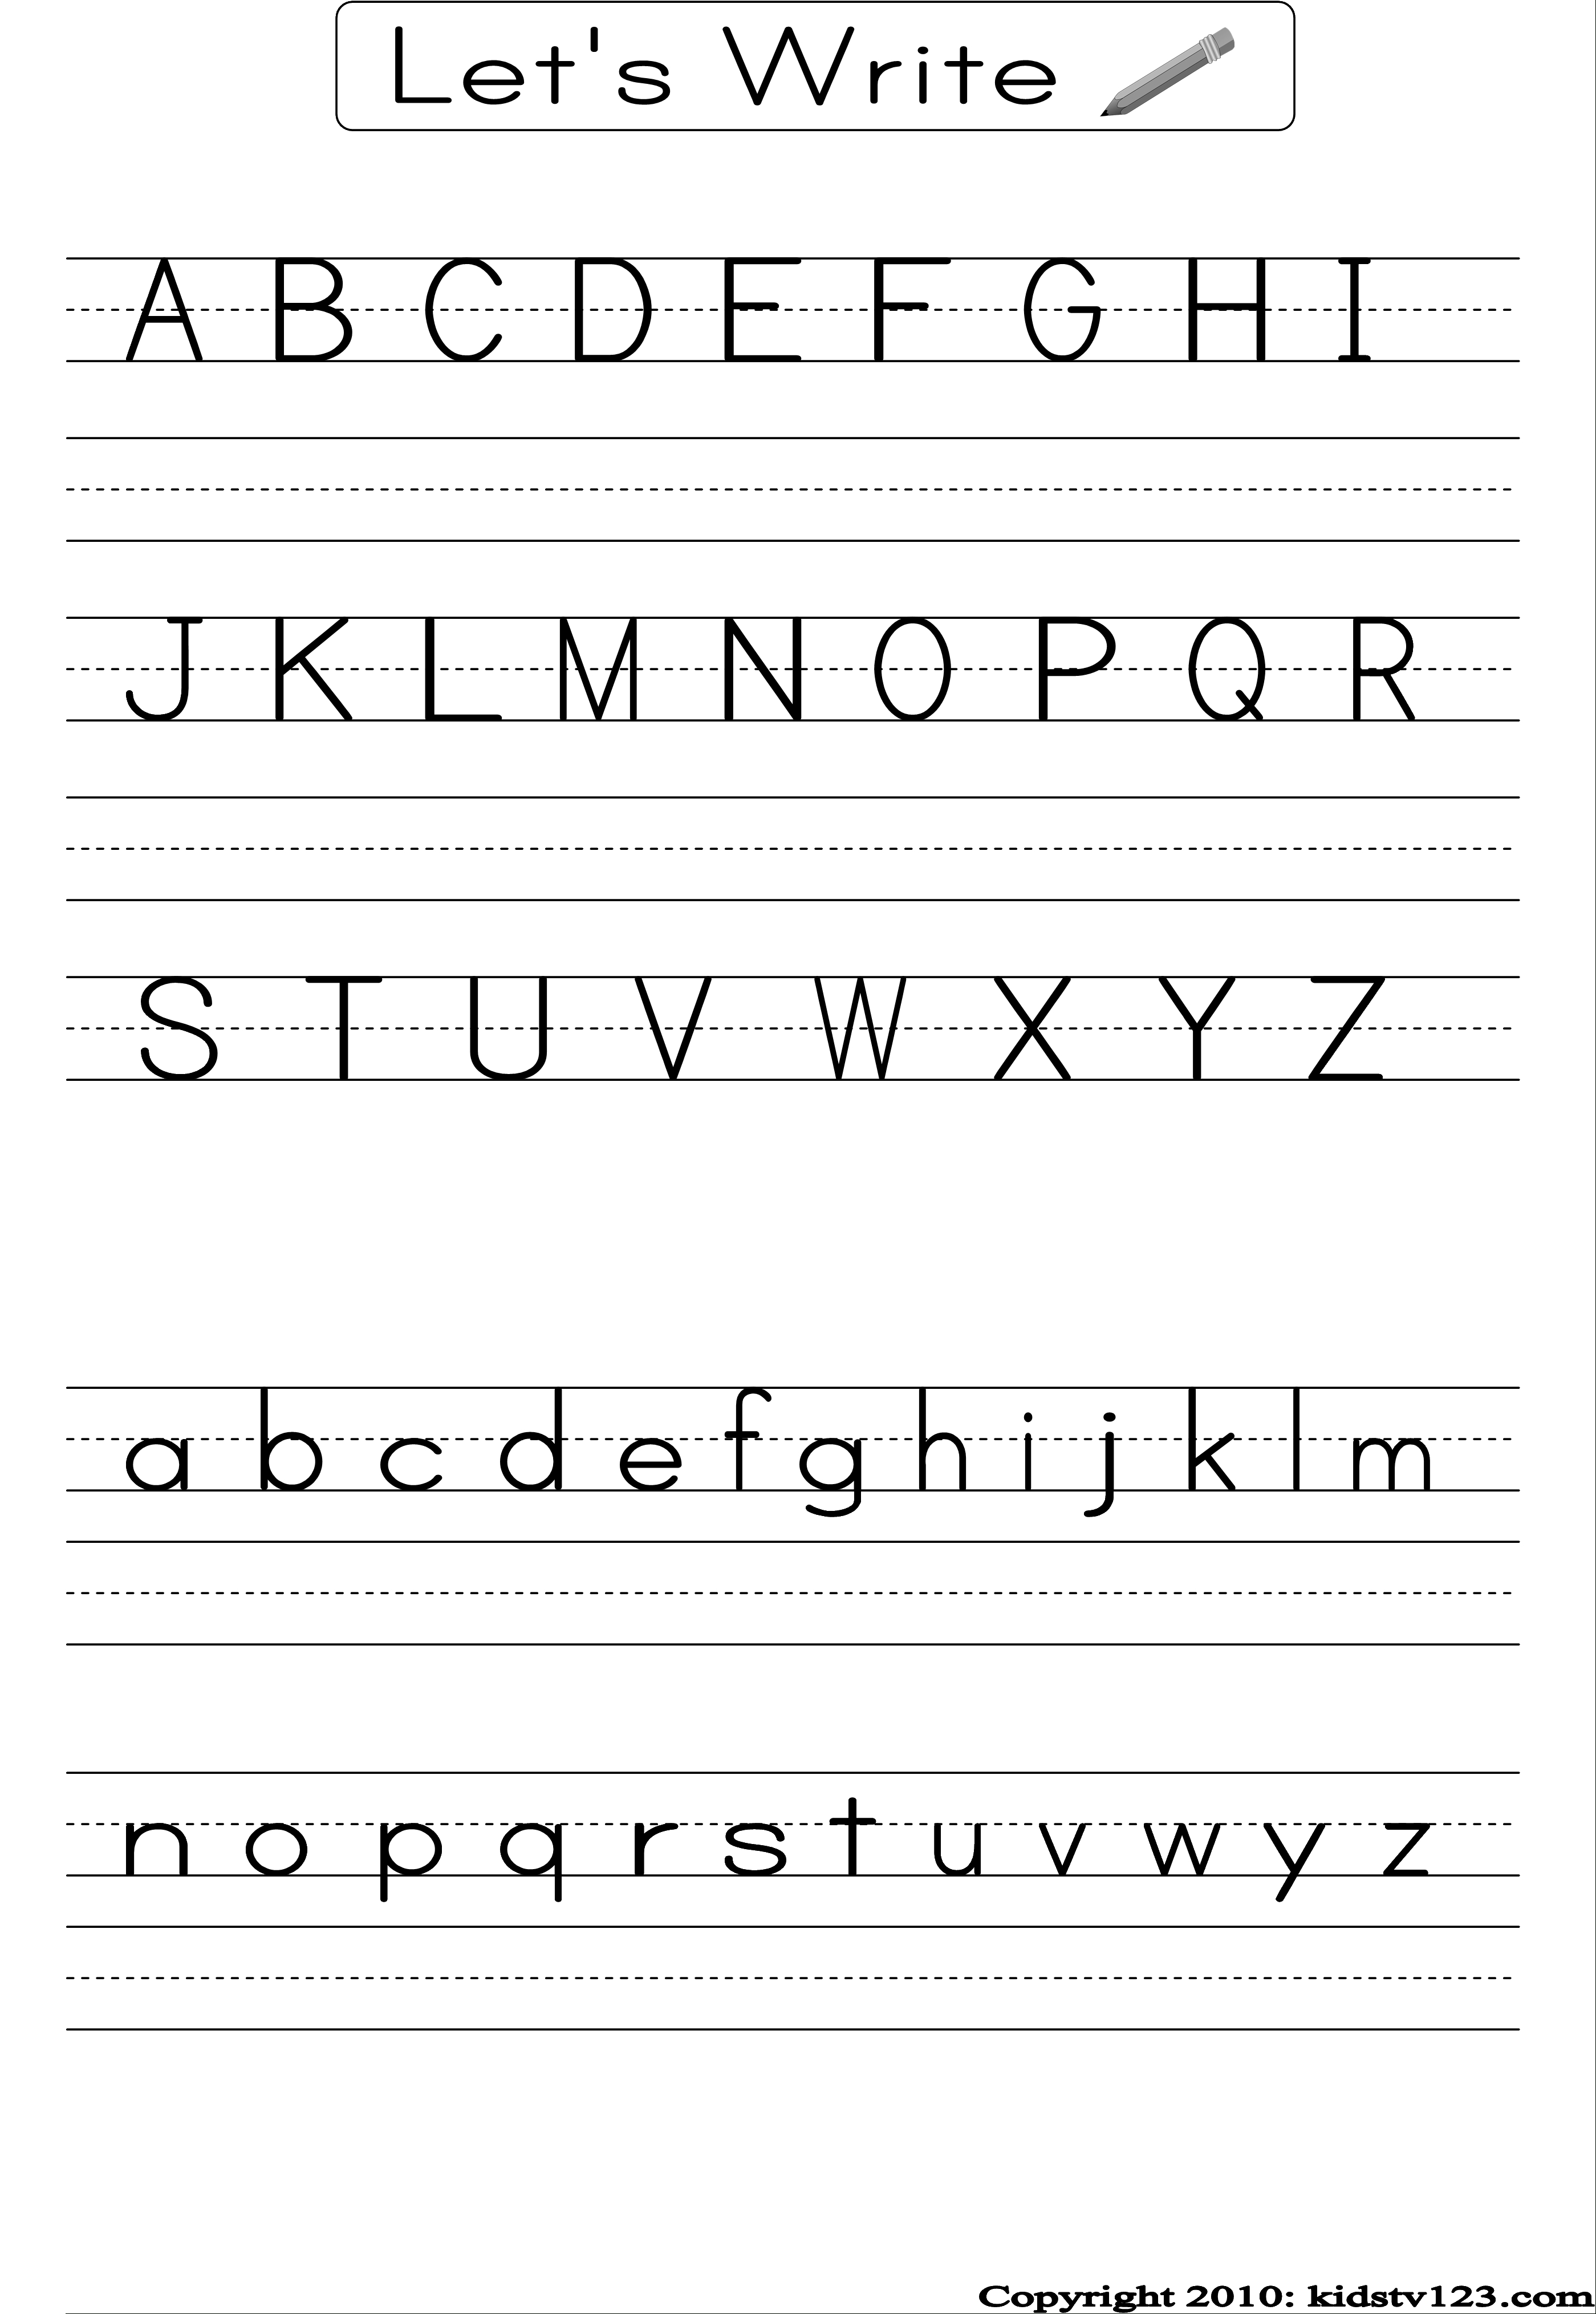 Alphabet Writing Practice Sheet | Edu-Fun | Alphabet Worksheets - Free Printable Practice Name Writing Sheets